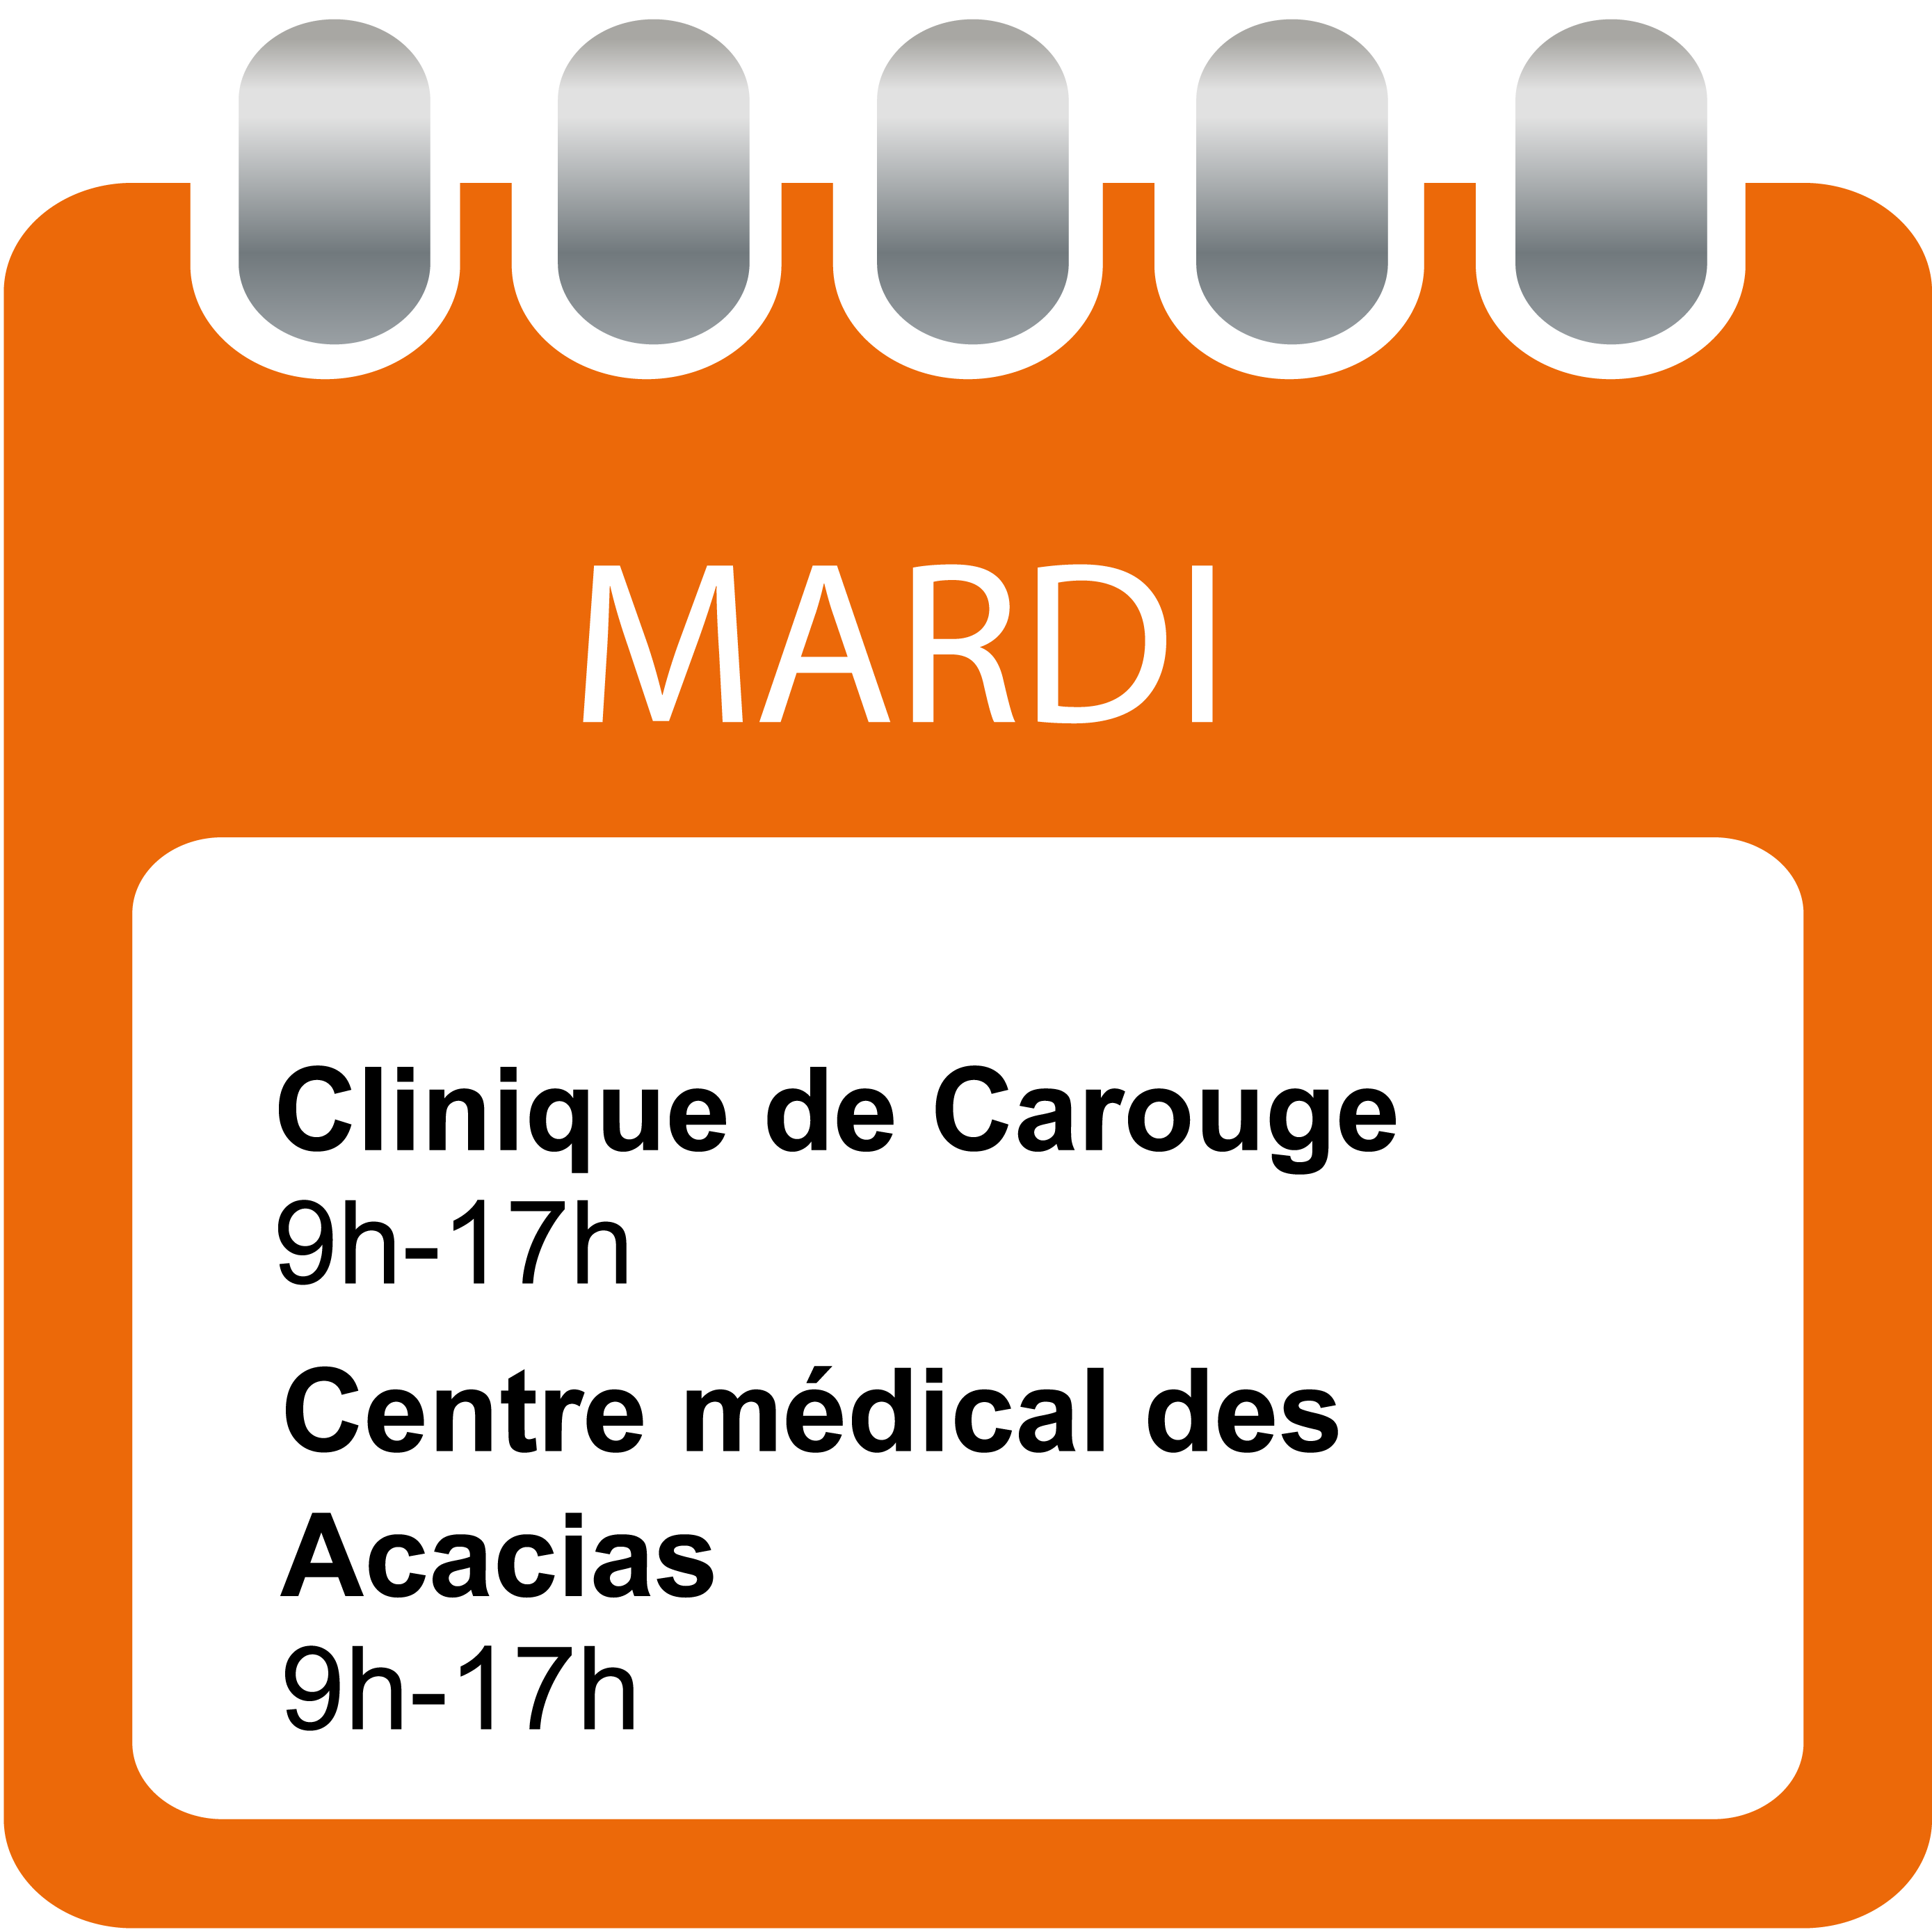 Mardi - Clinique de Carouge et Centre médical des Acacias